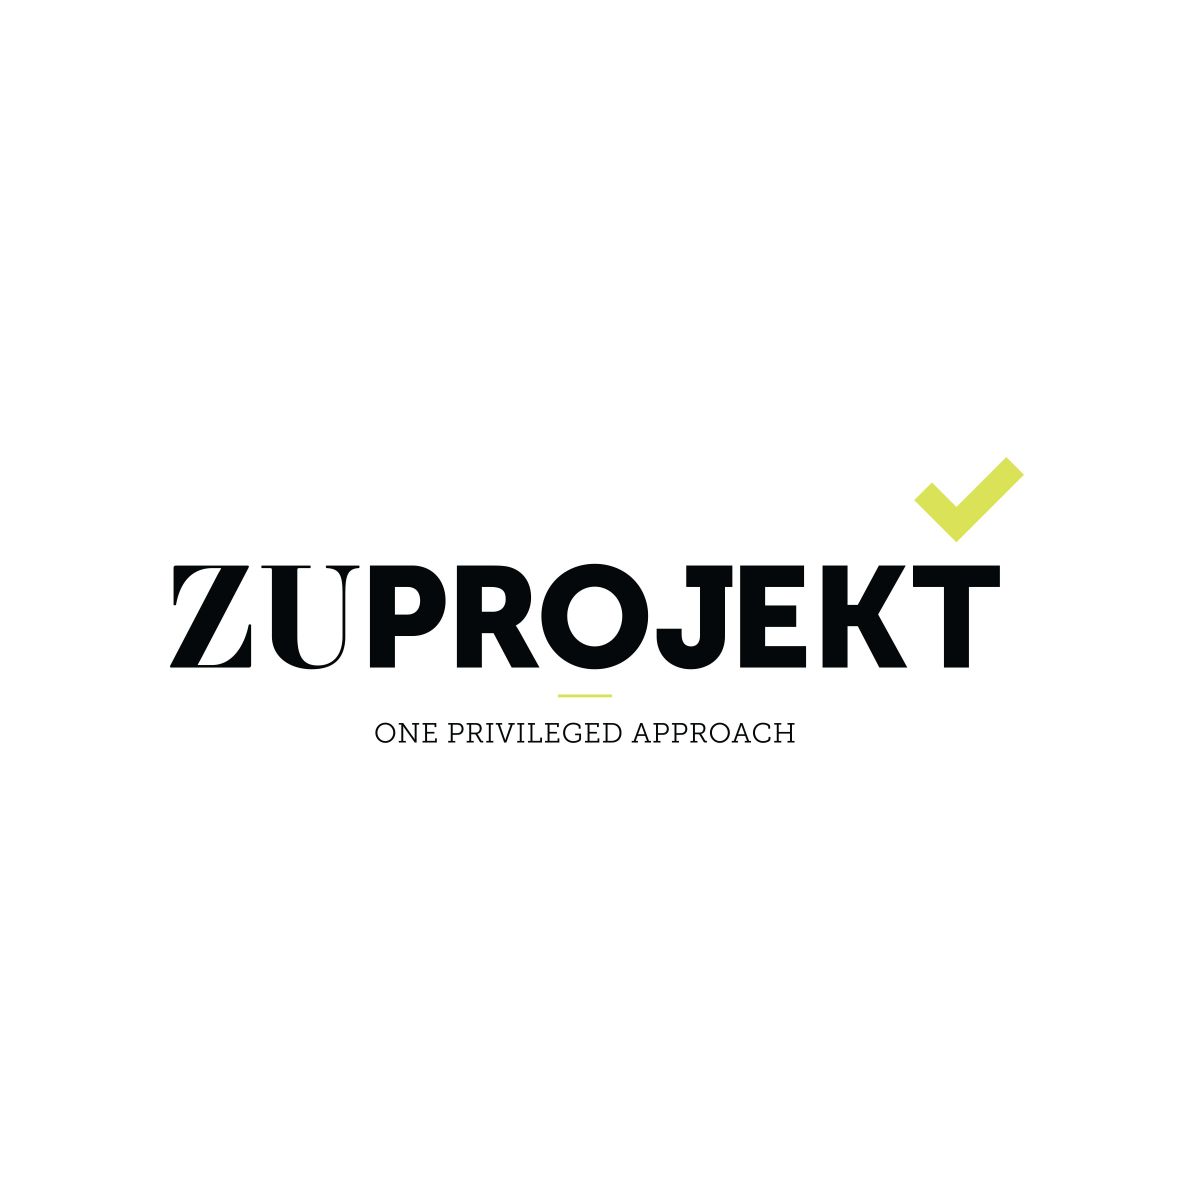 ZuProjekt - One Privileged Approach - Aveiro - Calafetagem